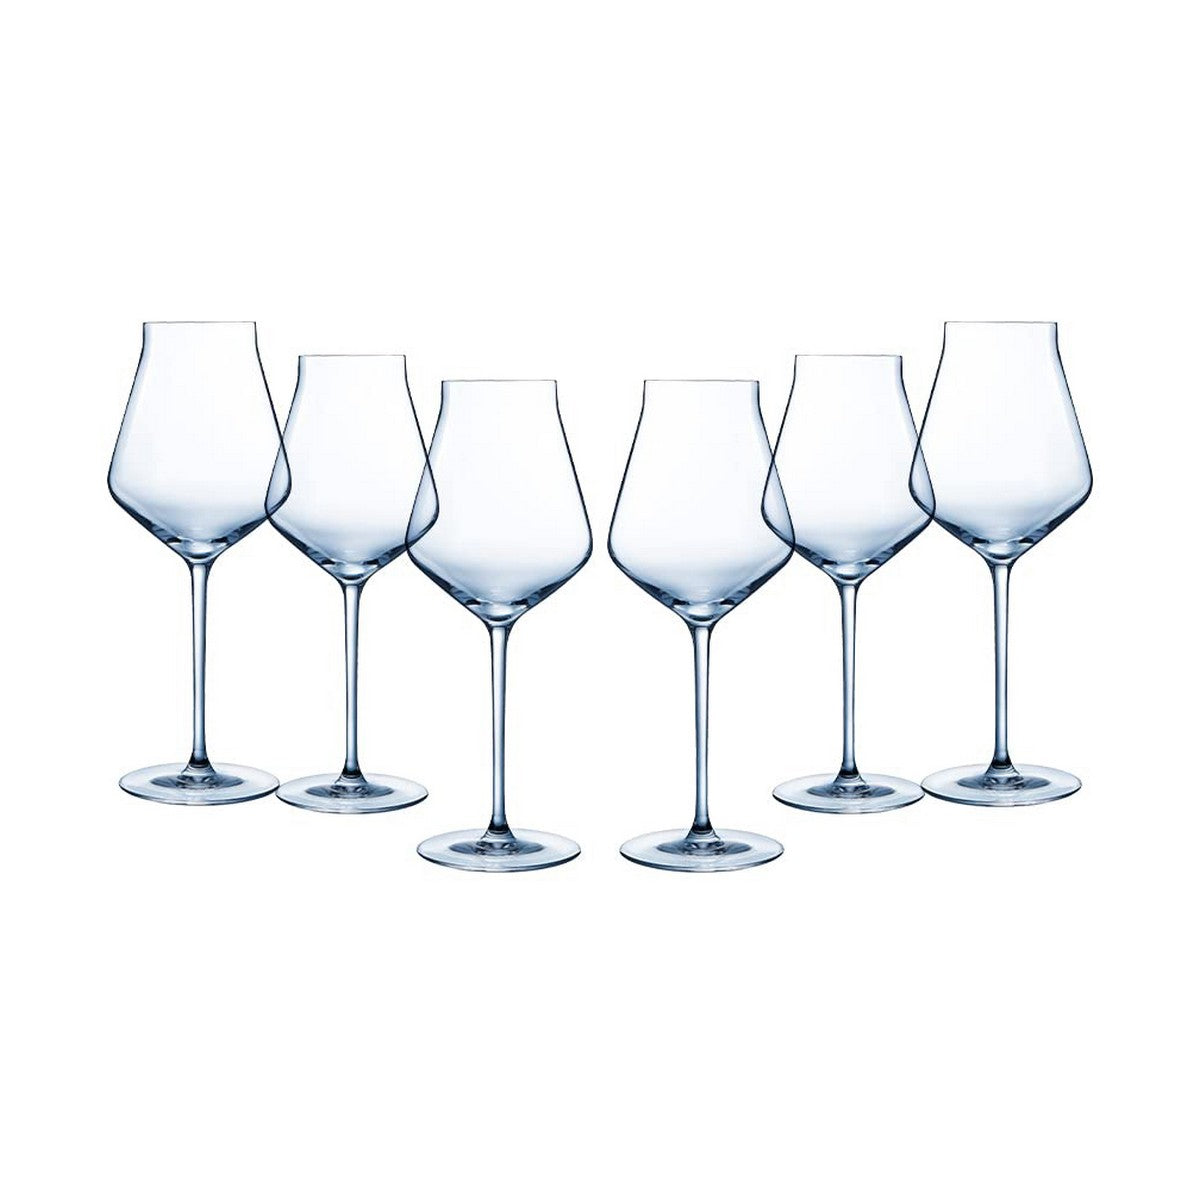 Wine glasses white - 6 pieces